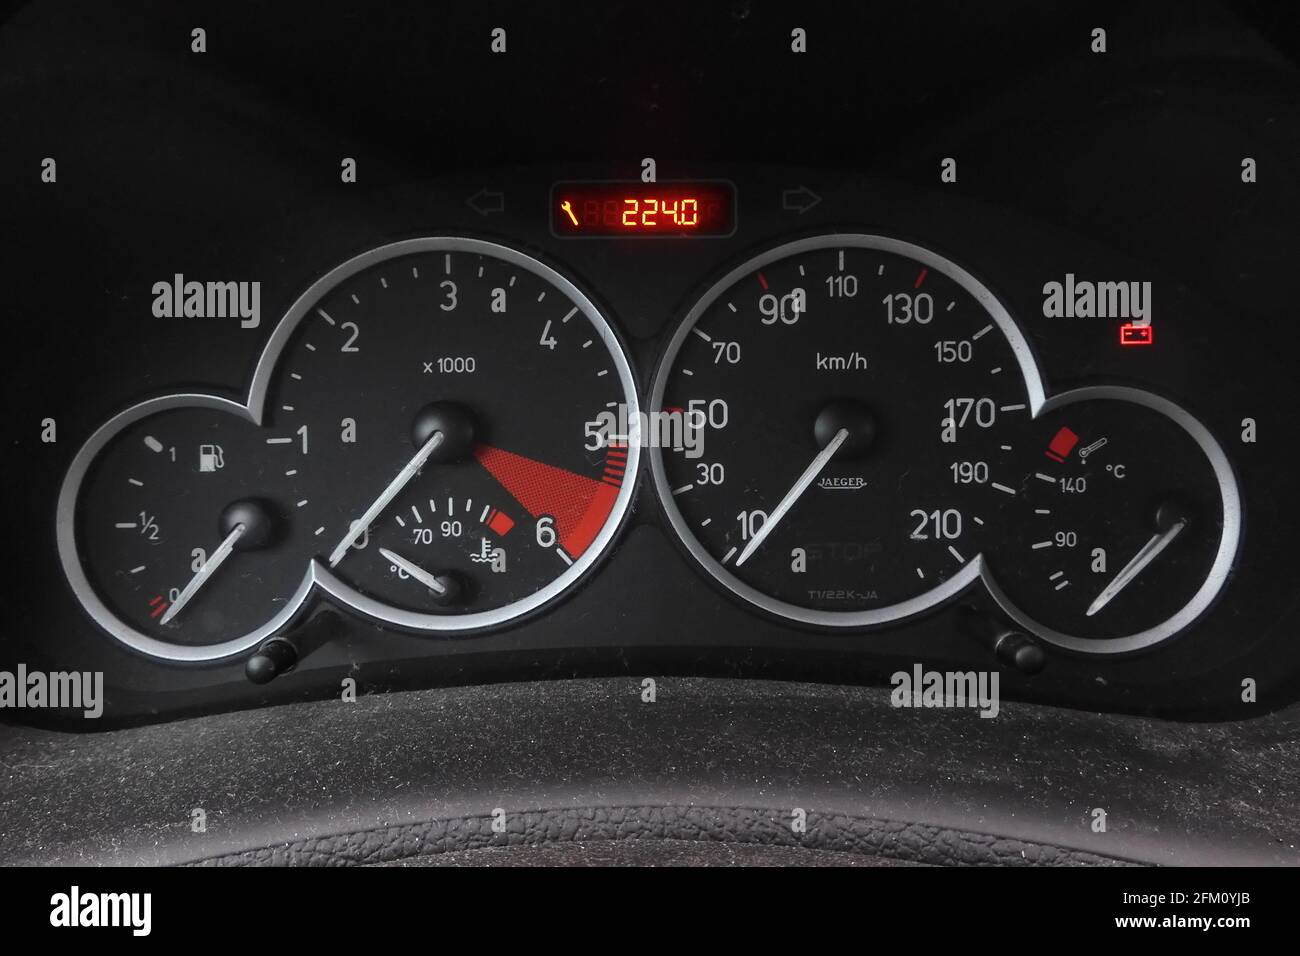 Voiture française Peugeot 206 tableau de bord avec indicateur de vitesse, tachymètre, jauge d'huile, jauge de carburant, jauge de pression d'huile, Indicateur de température de l'eau, régime et kilométrage Banque D'Images